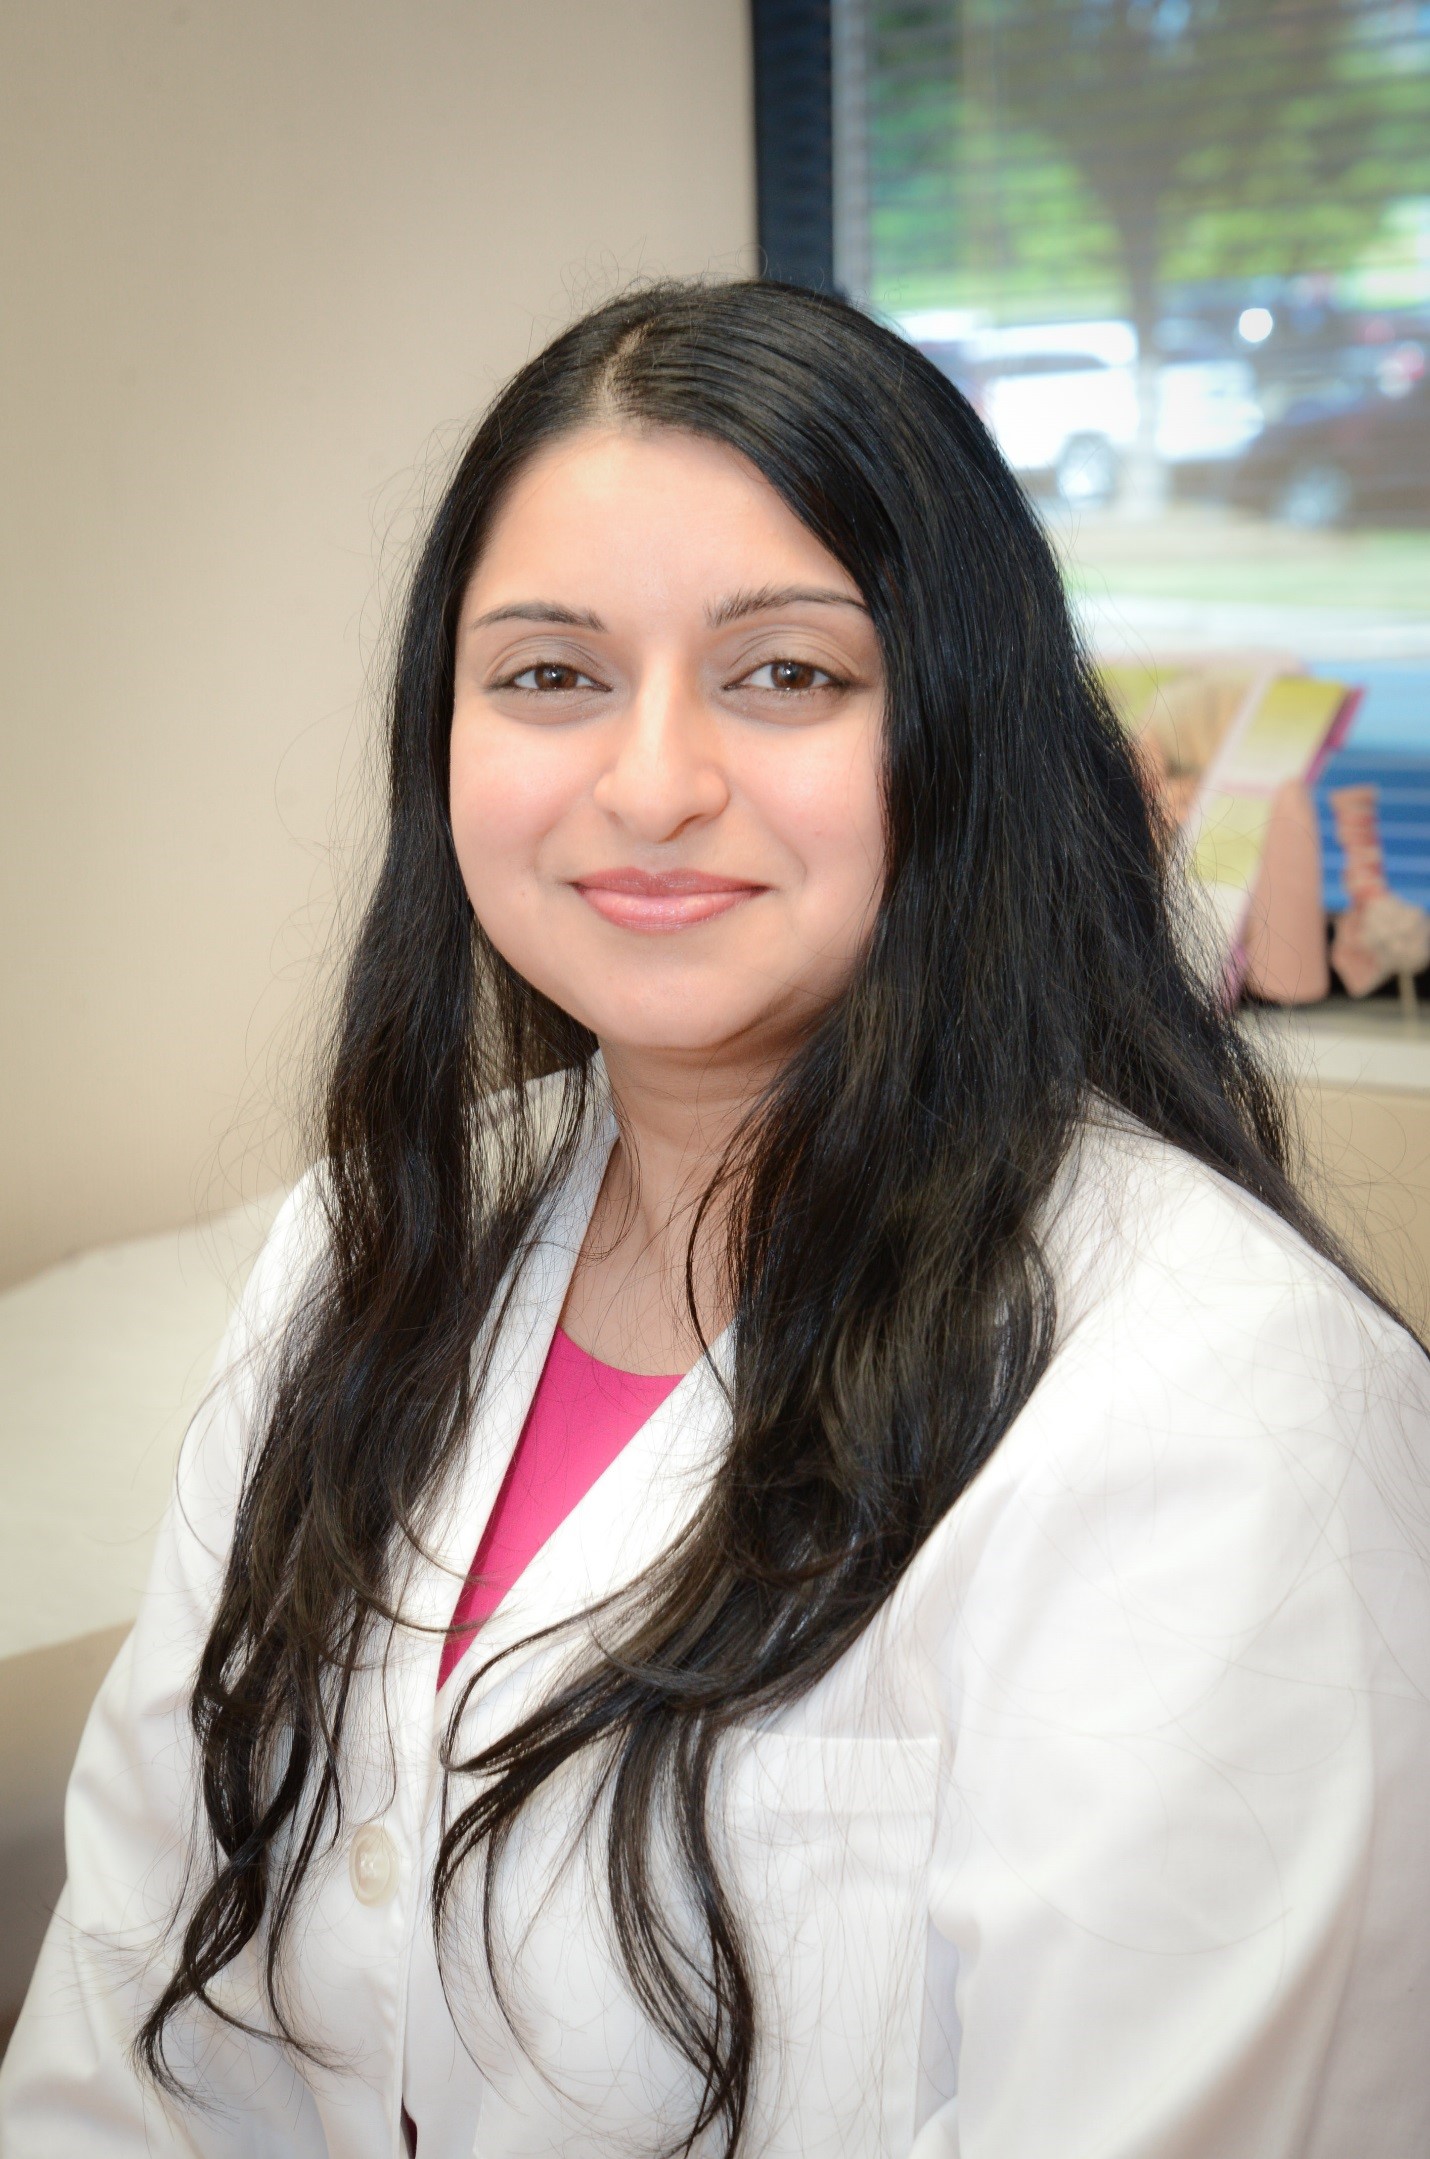 Neha Kharod, M.D. Center for Allergy and Asthma of Georgia Alpharetta (770)459-0620